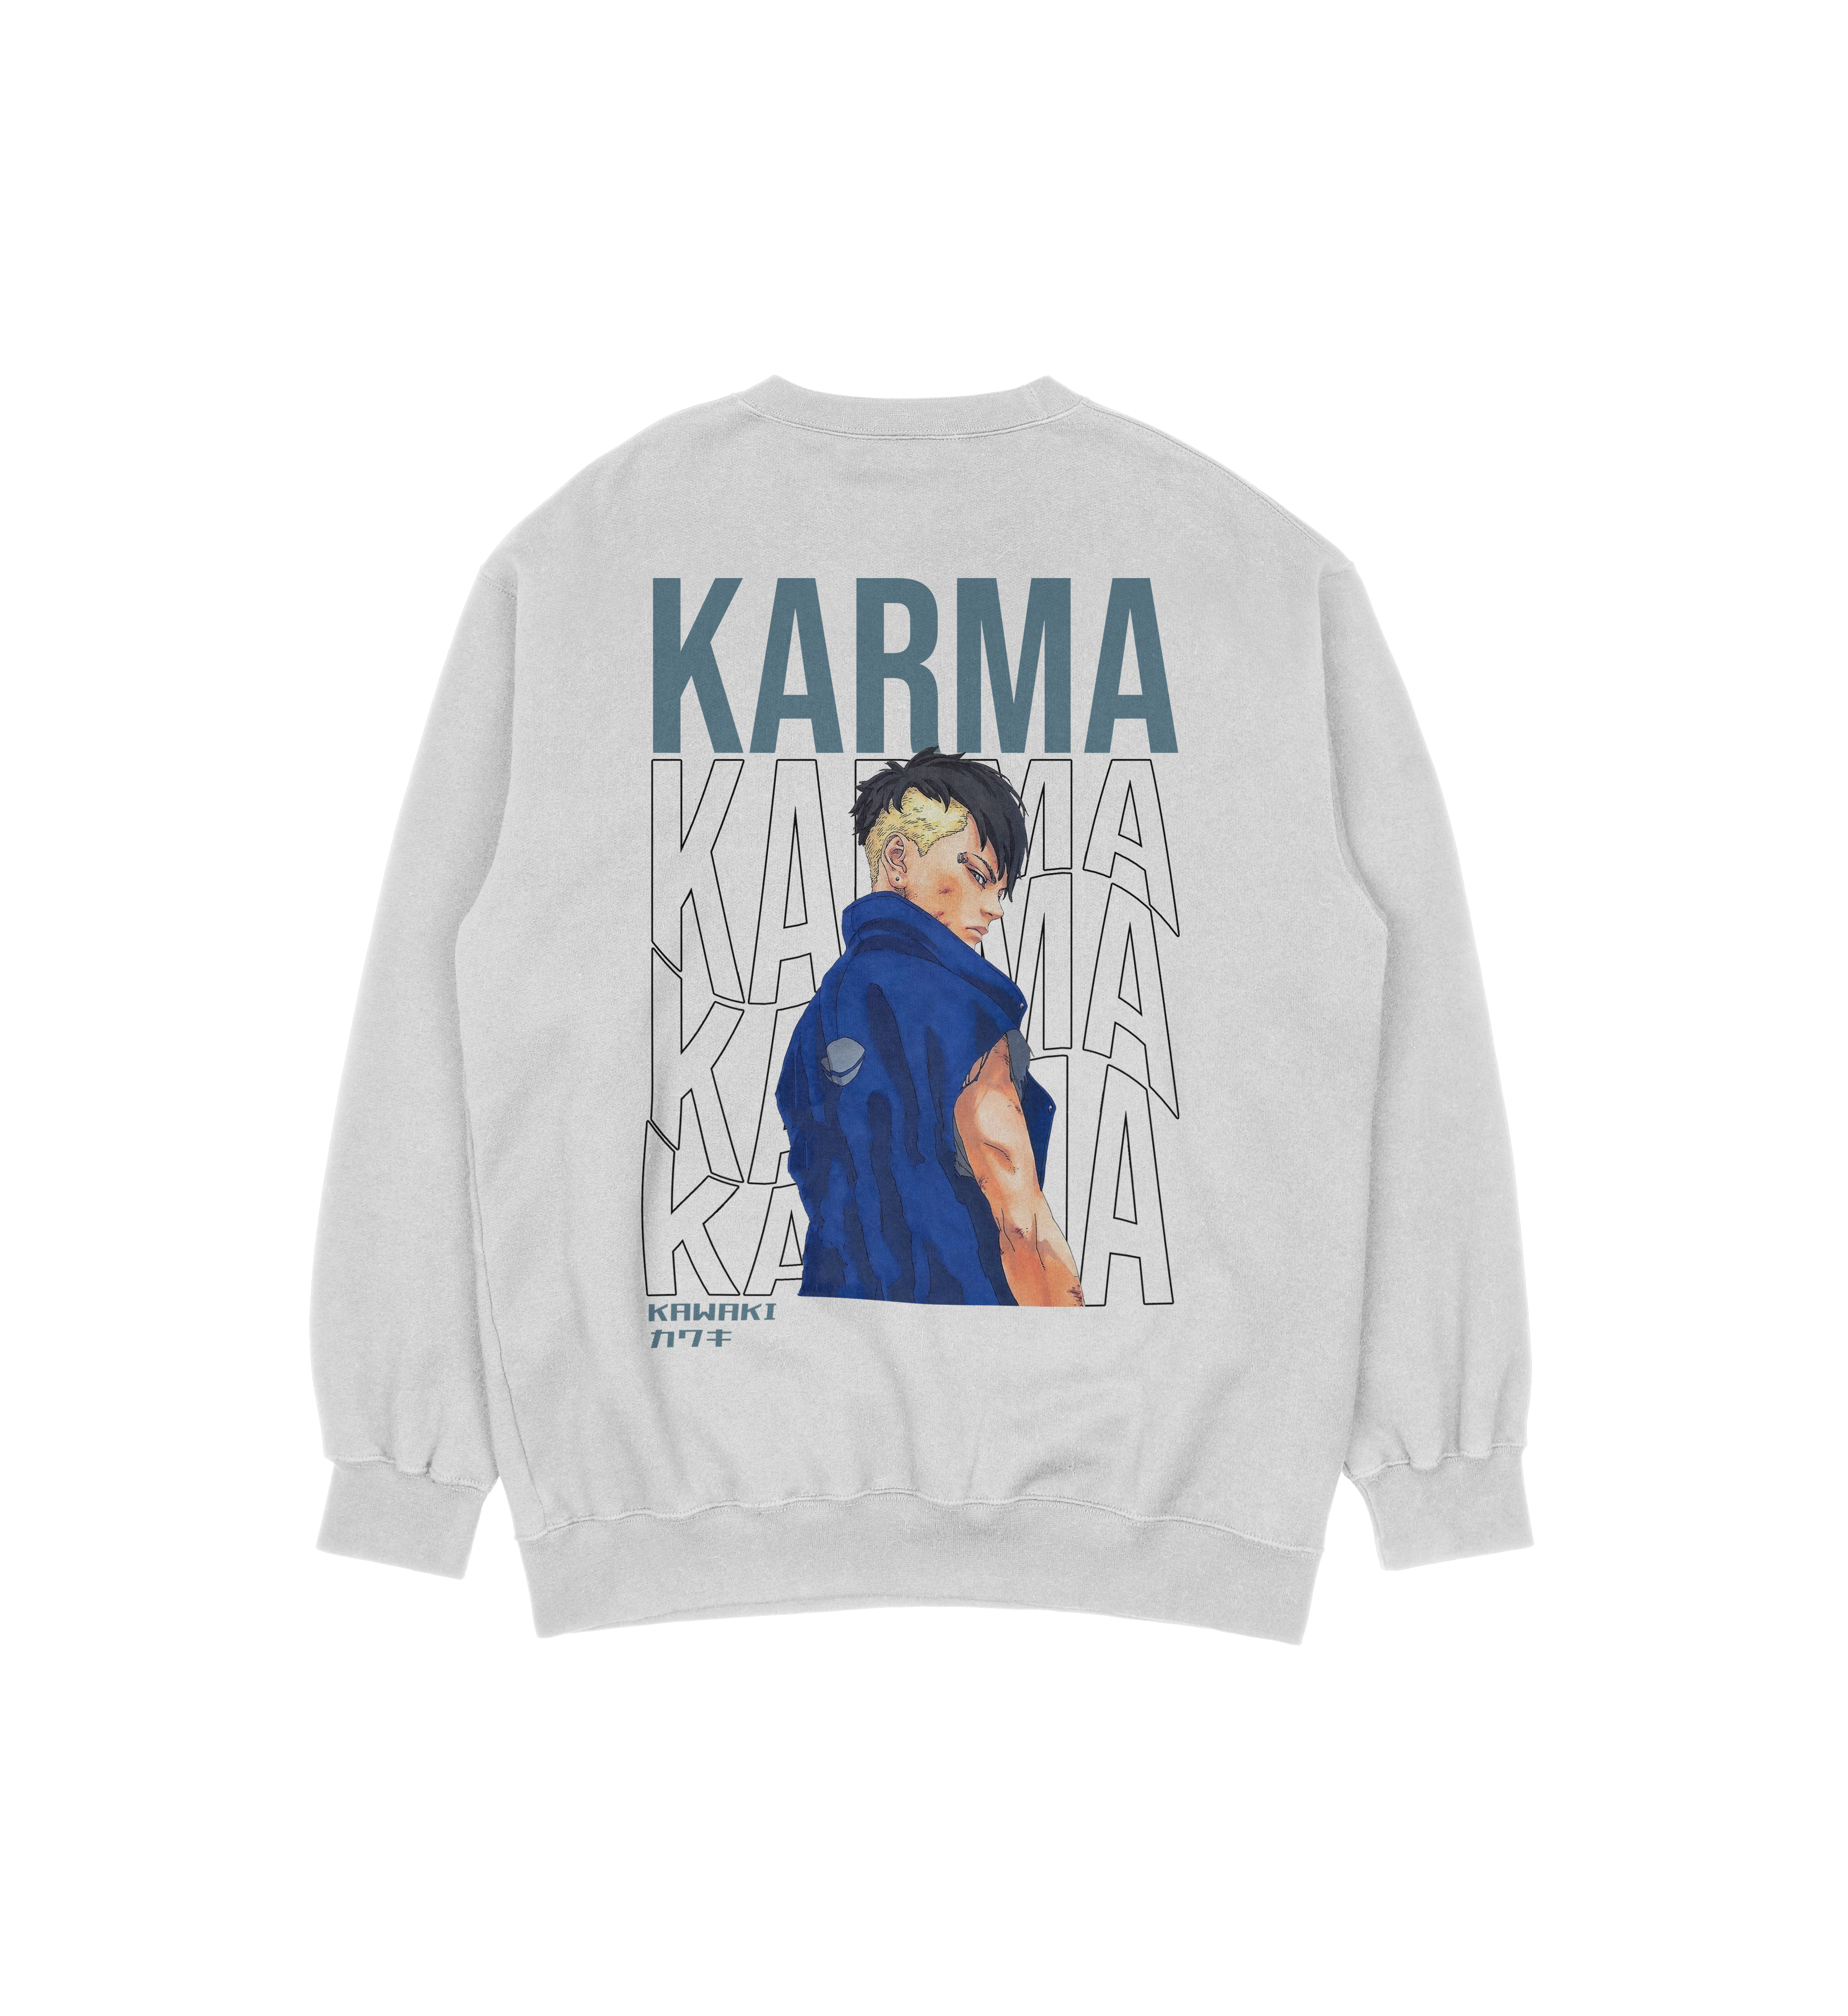 Kawaki Karma Boruto | White Sweatshirt